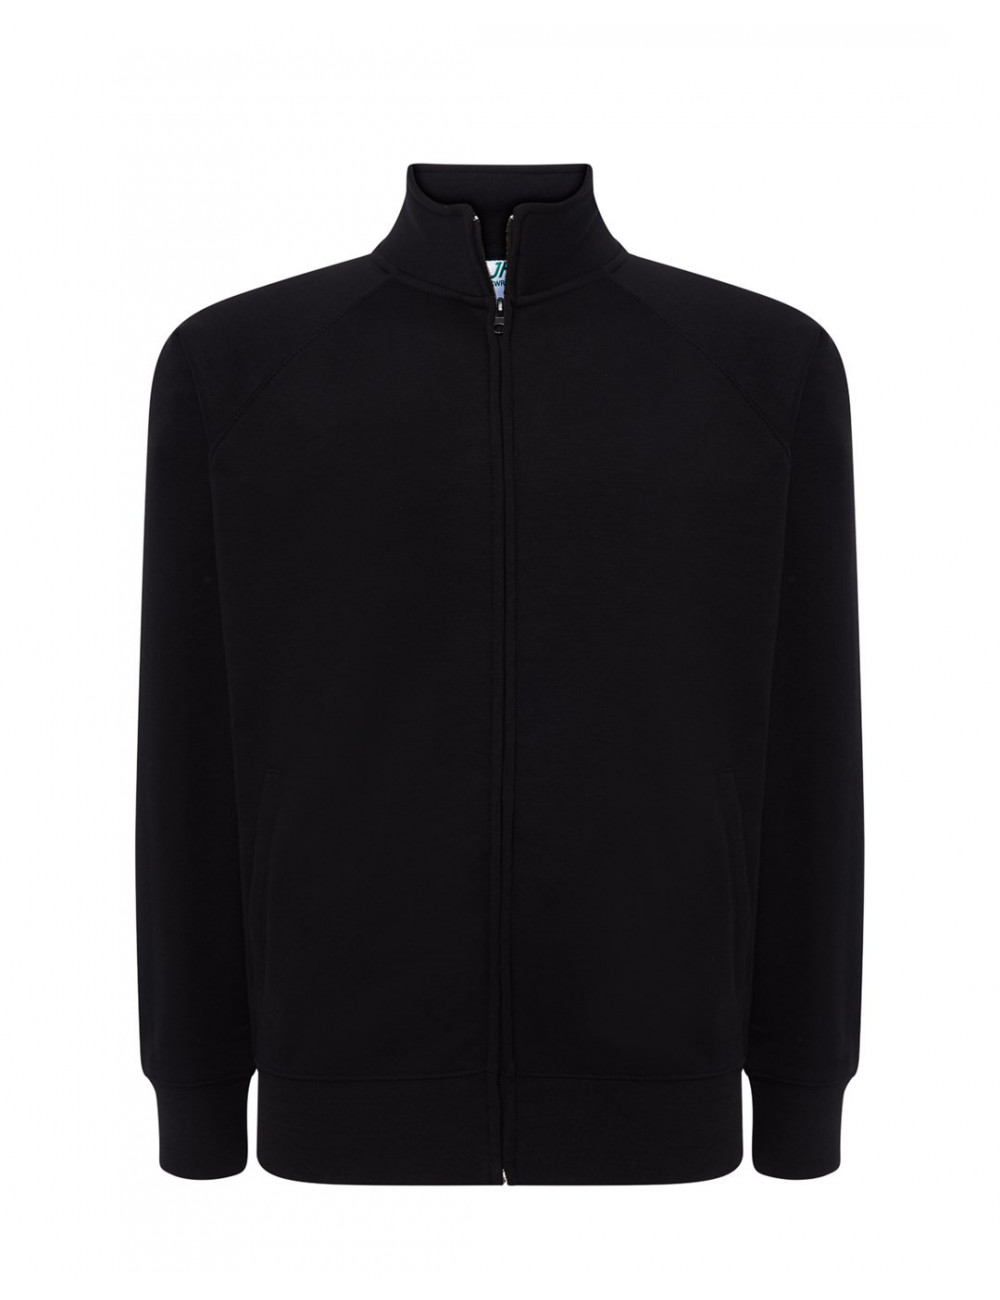 Herren-Sweatshirt mit durchgehendem Reißverschluss, schwarz, JHK